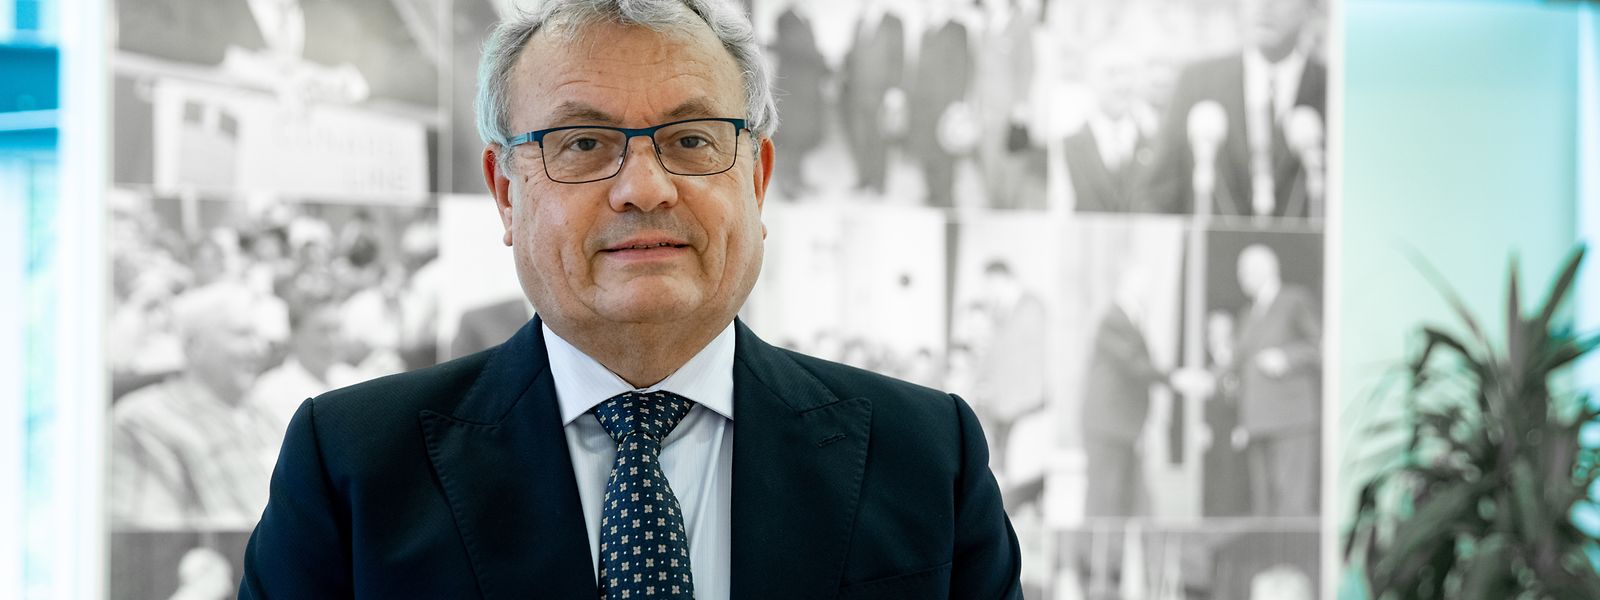 Vladimír Dlouhý: „Ich bin ein überzeugter Verfechter des Multilateralismus.“ 